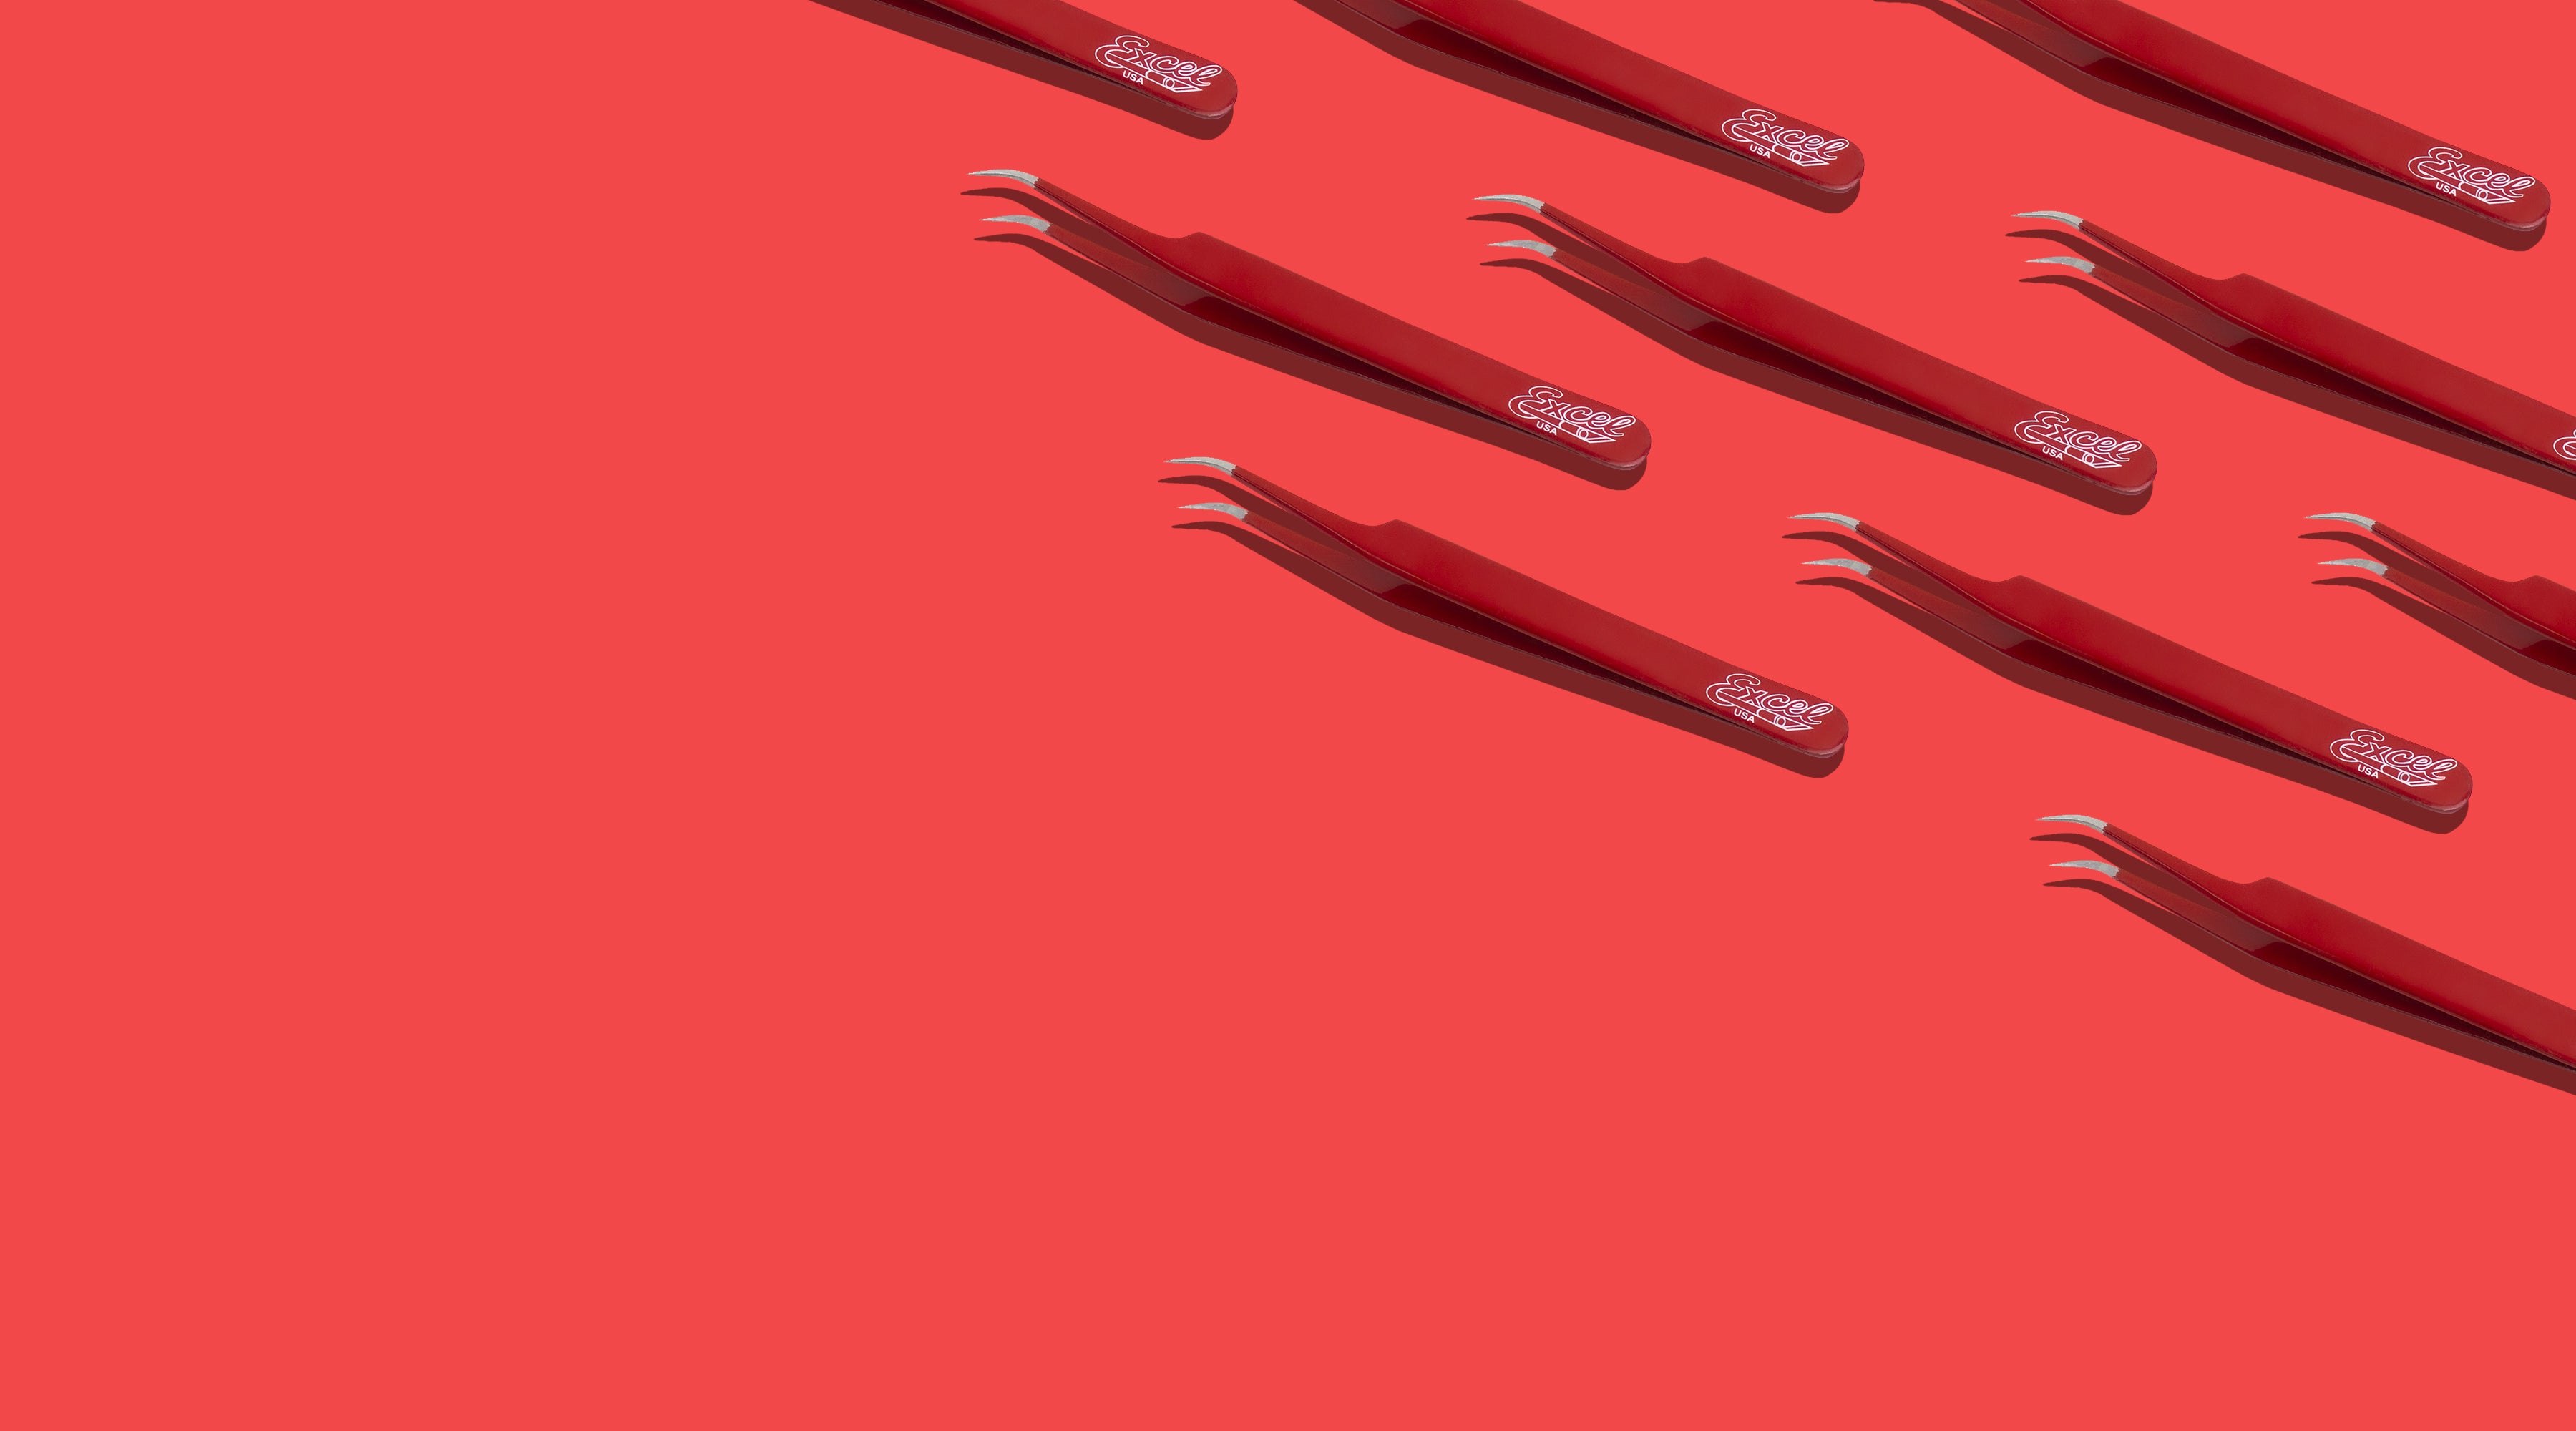 Sharp Pointed Tweezers – Excel Blades